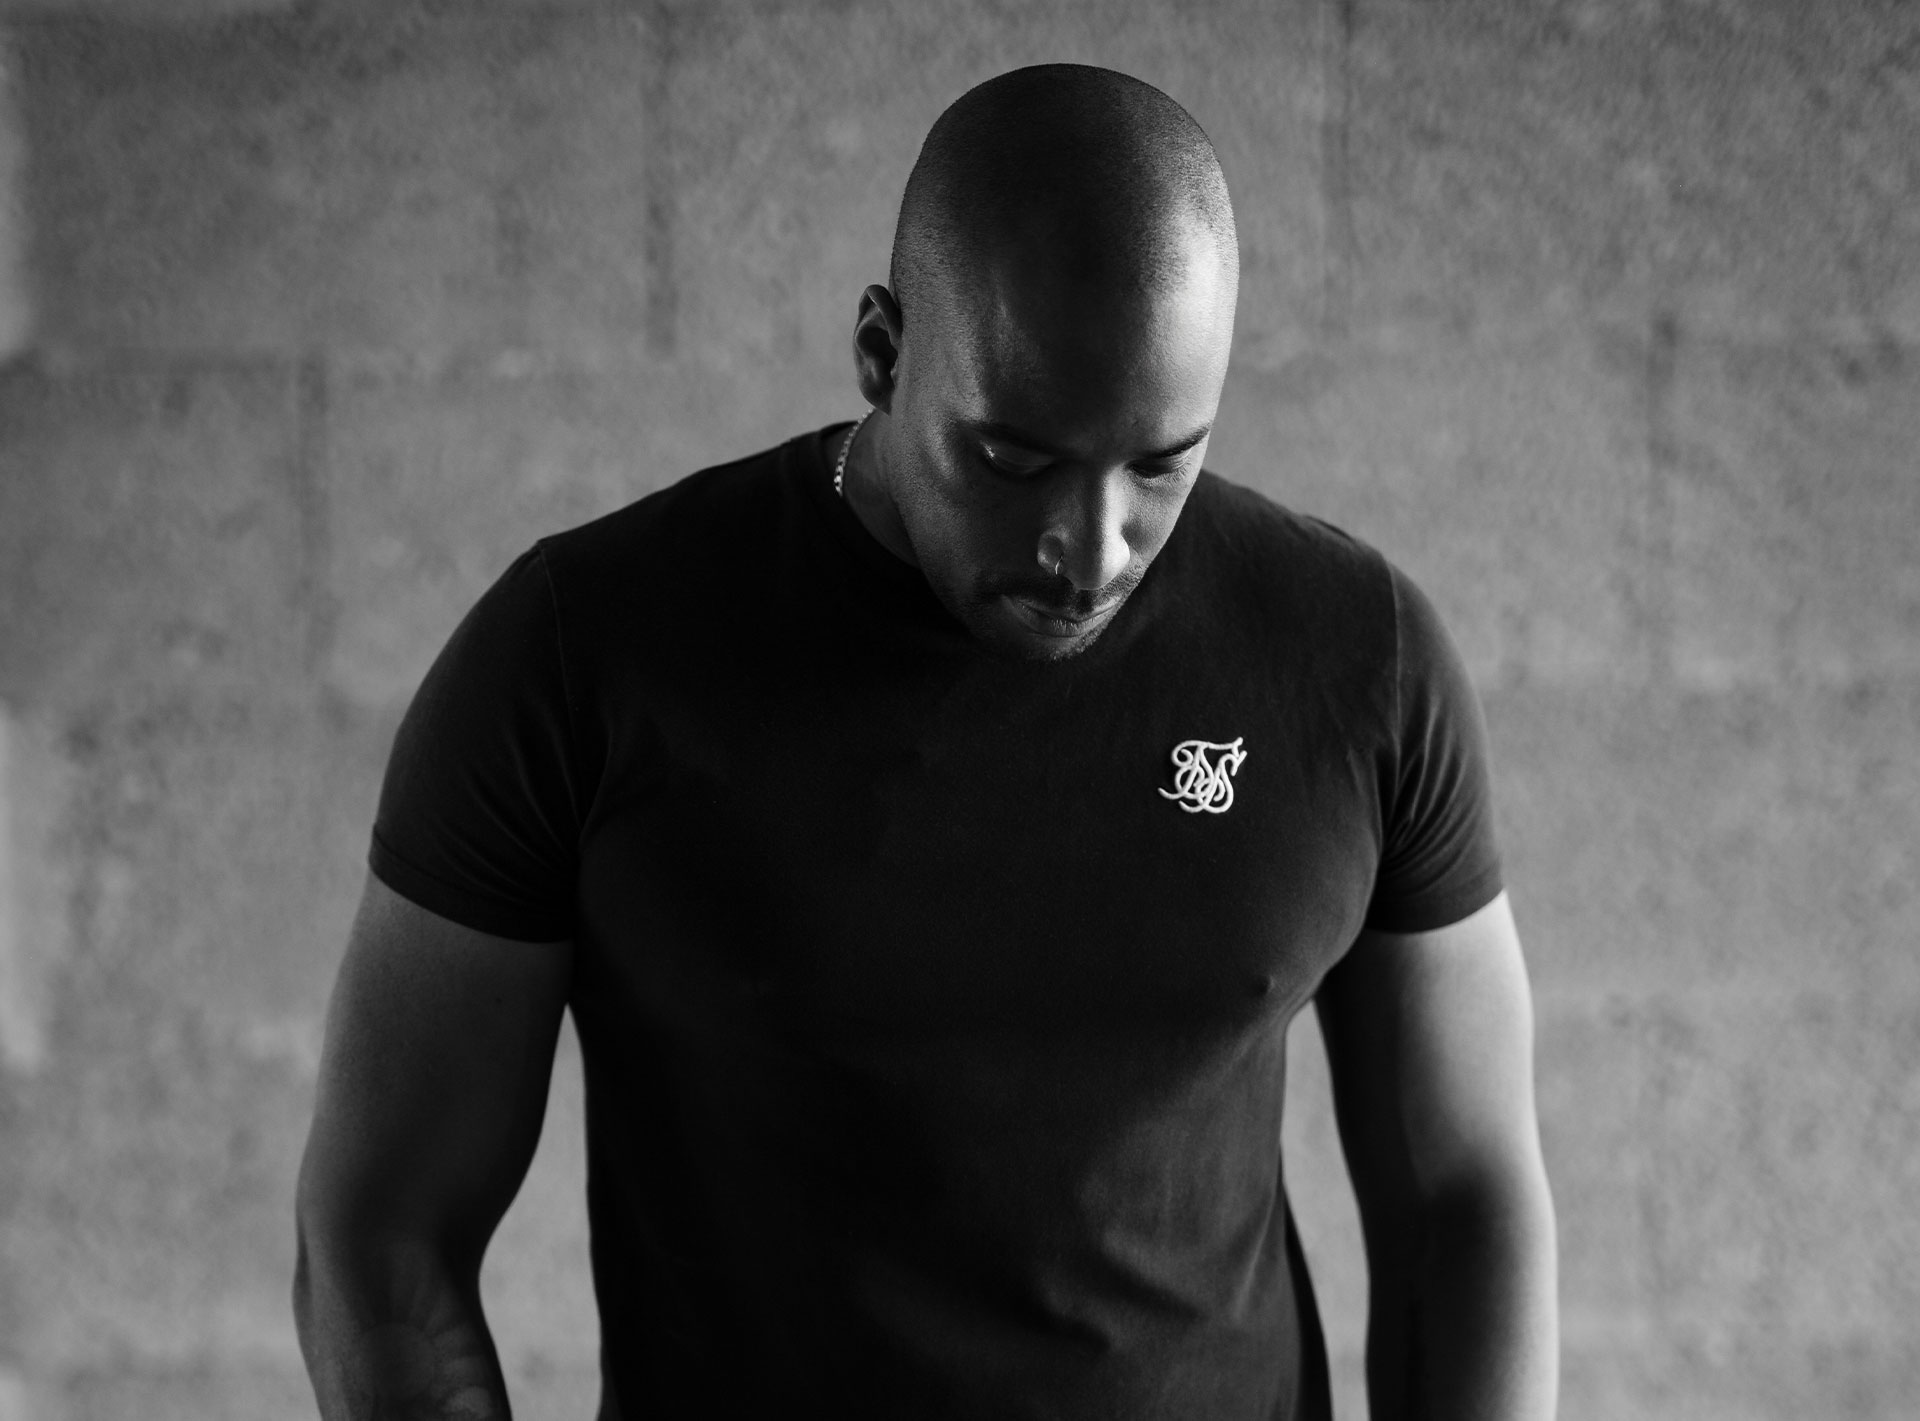 Schwarz-weiß Foto eines muskulösen Mannes in einem engen T-Shirt, der nach unten schaut.